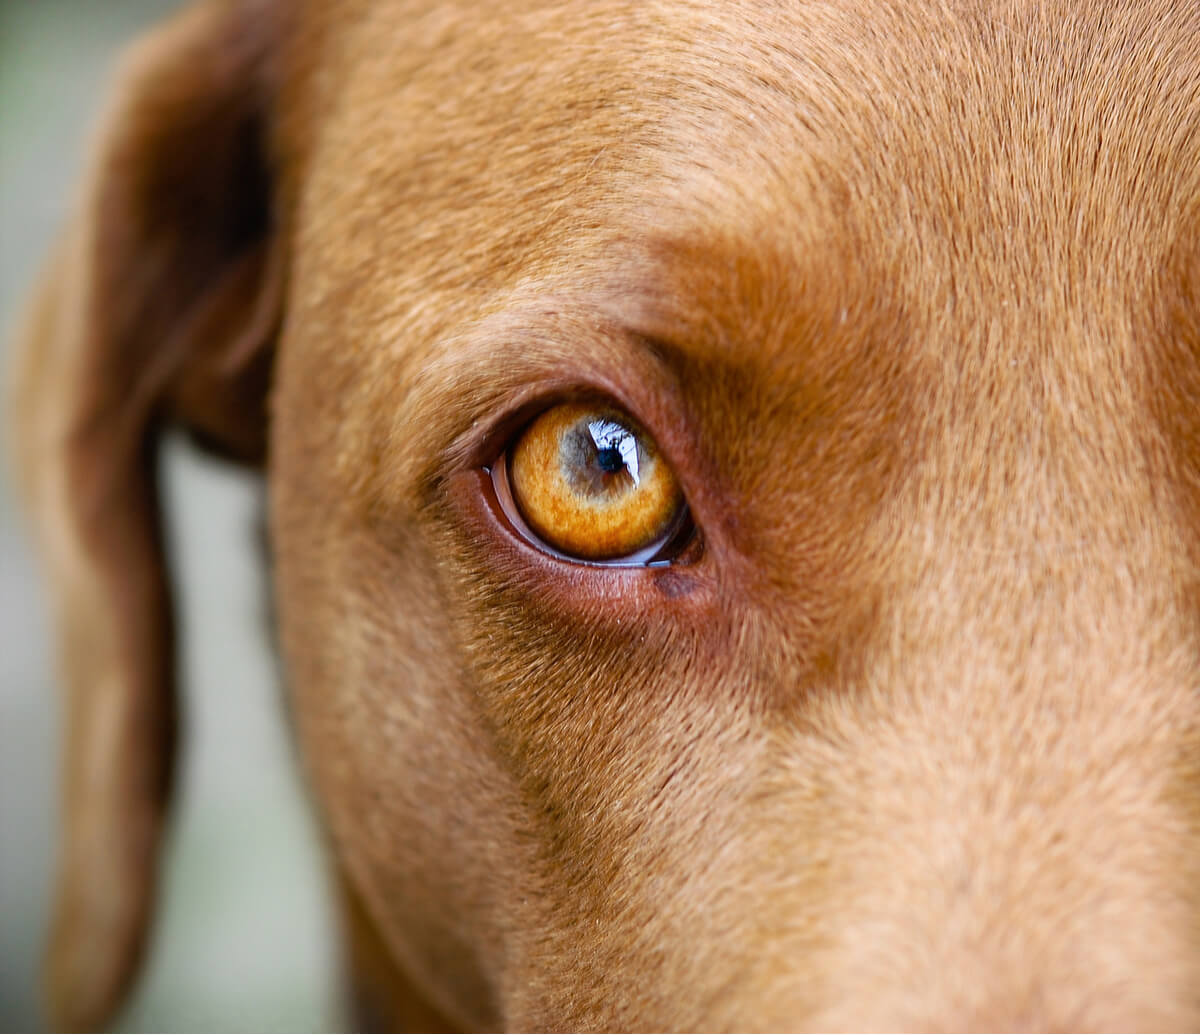 Mein Hund hat ein rotes, geschwollenes Auge - was nun?